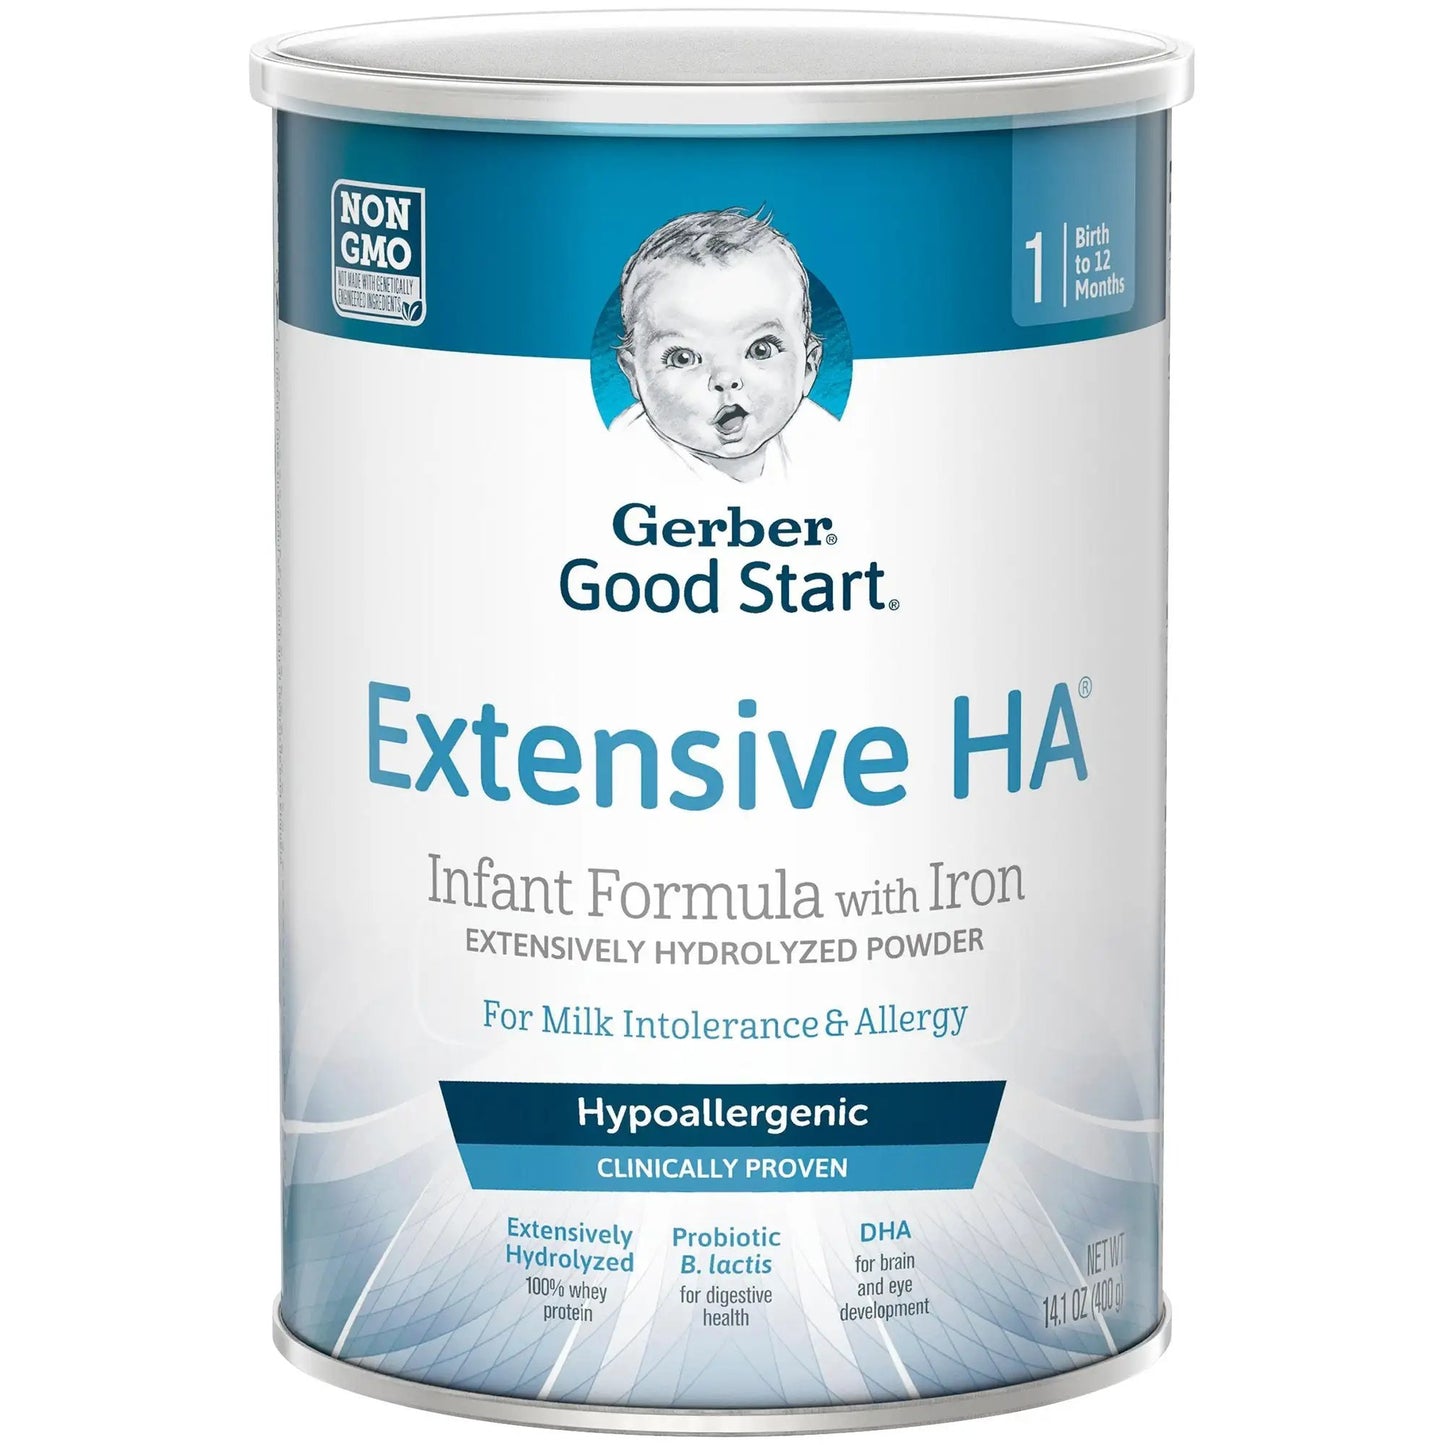 Gerber Extensive HA Powder Infant Formula, 14.1 oz. Can